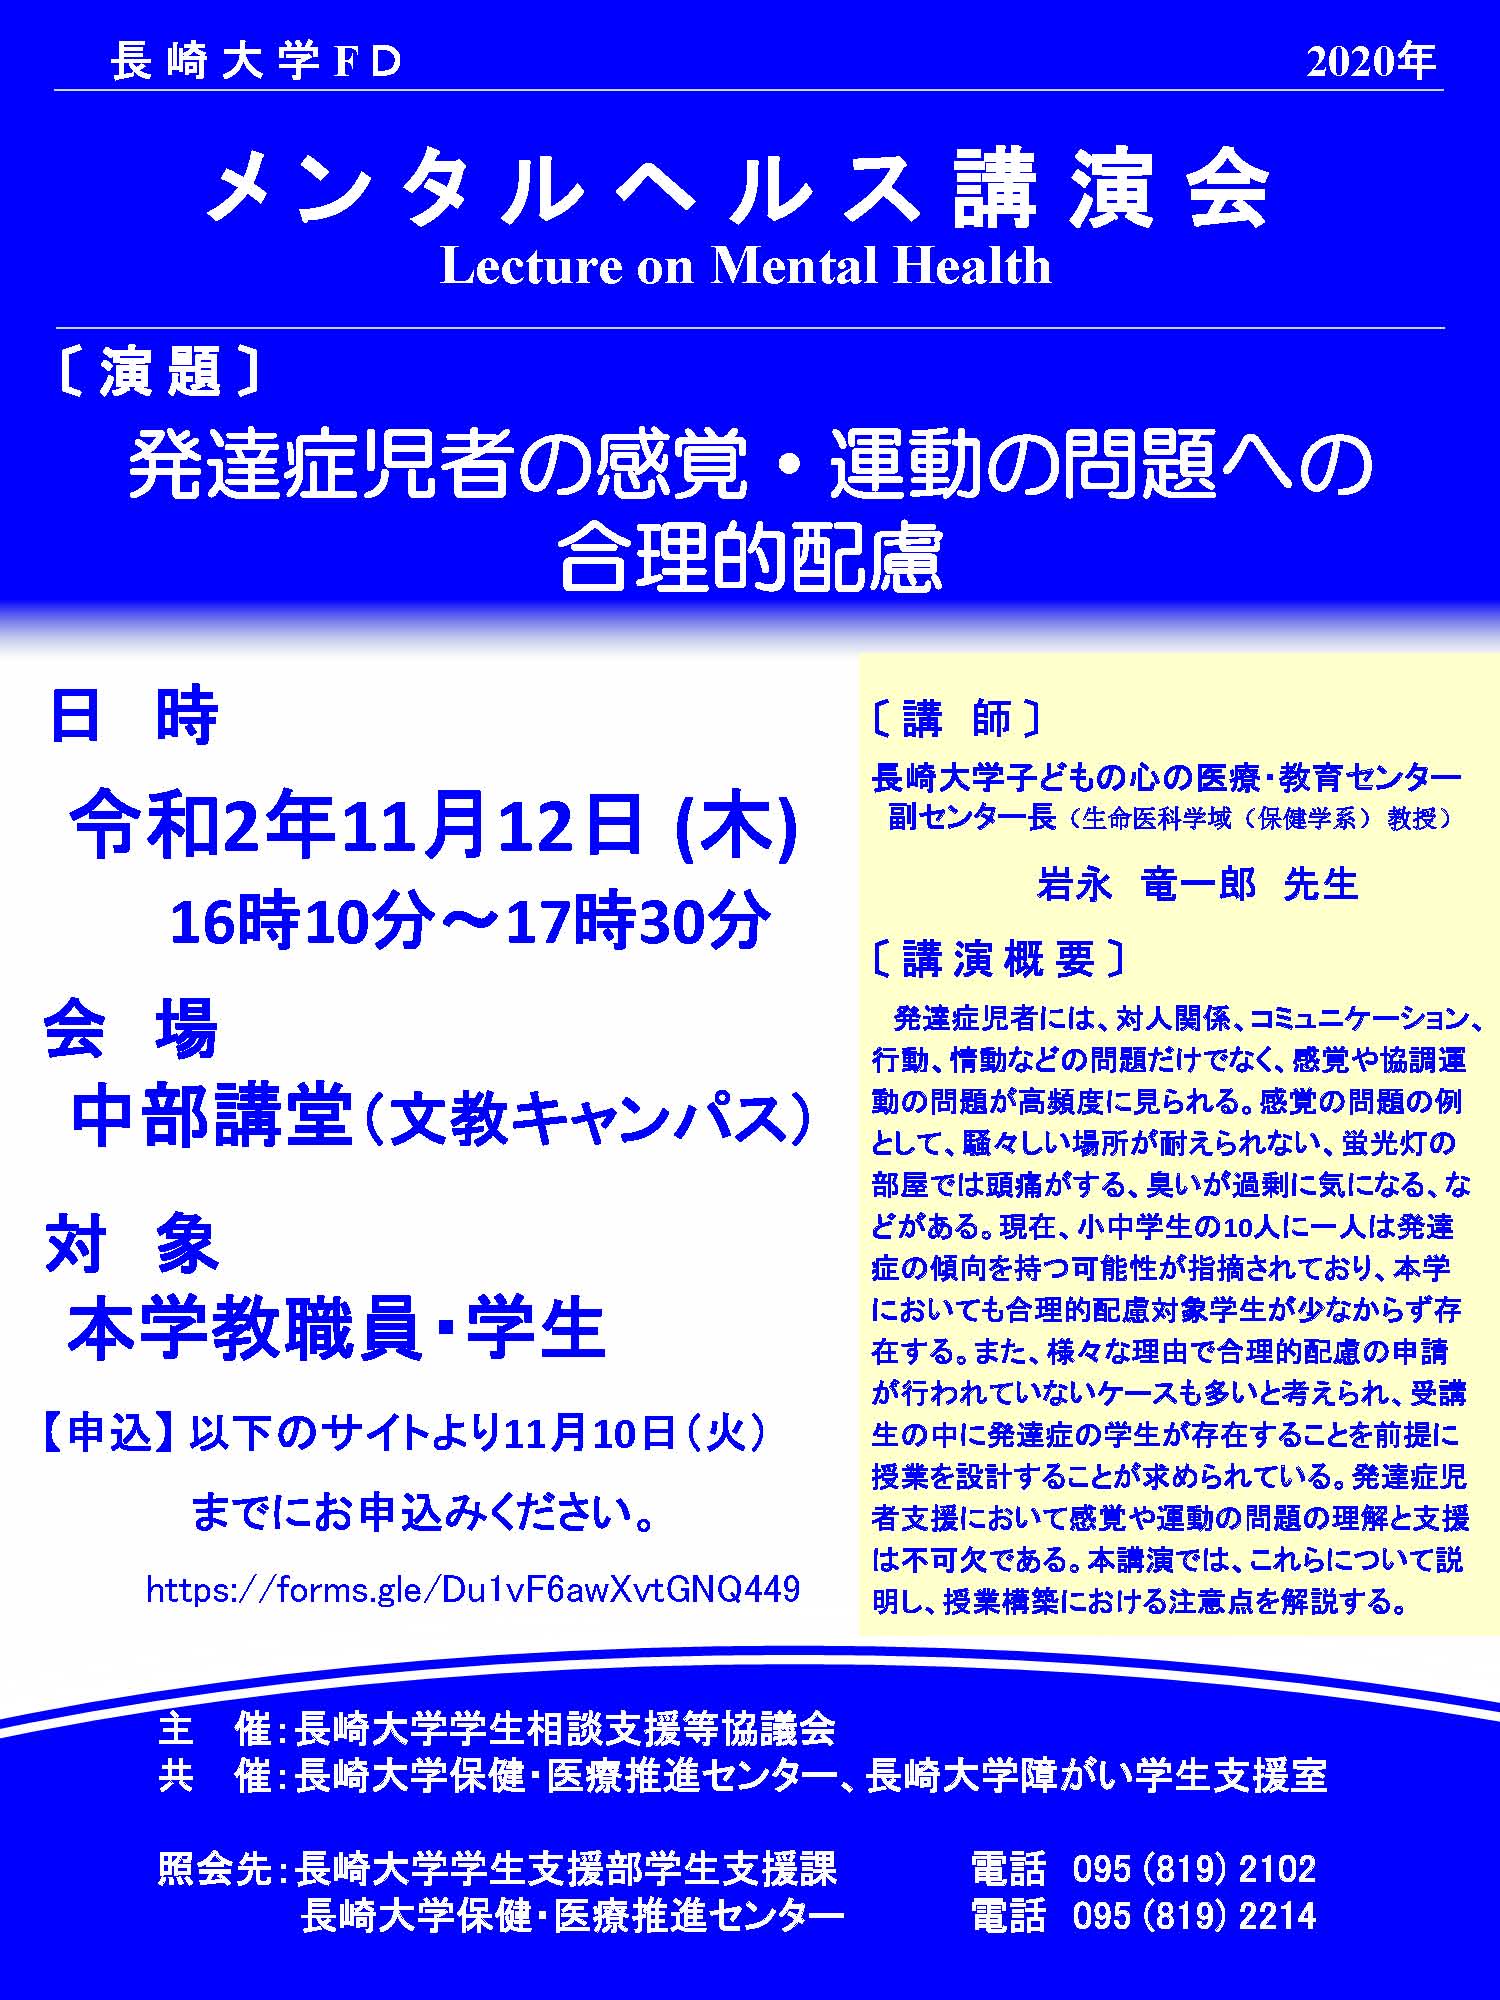 長崎大学メンタルヘルス講演会